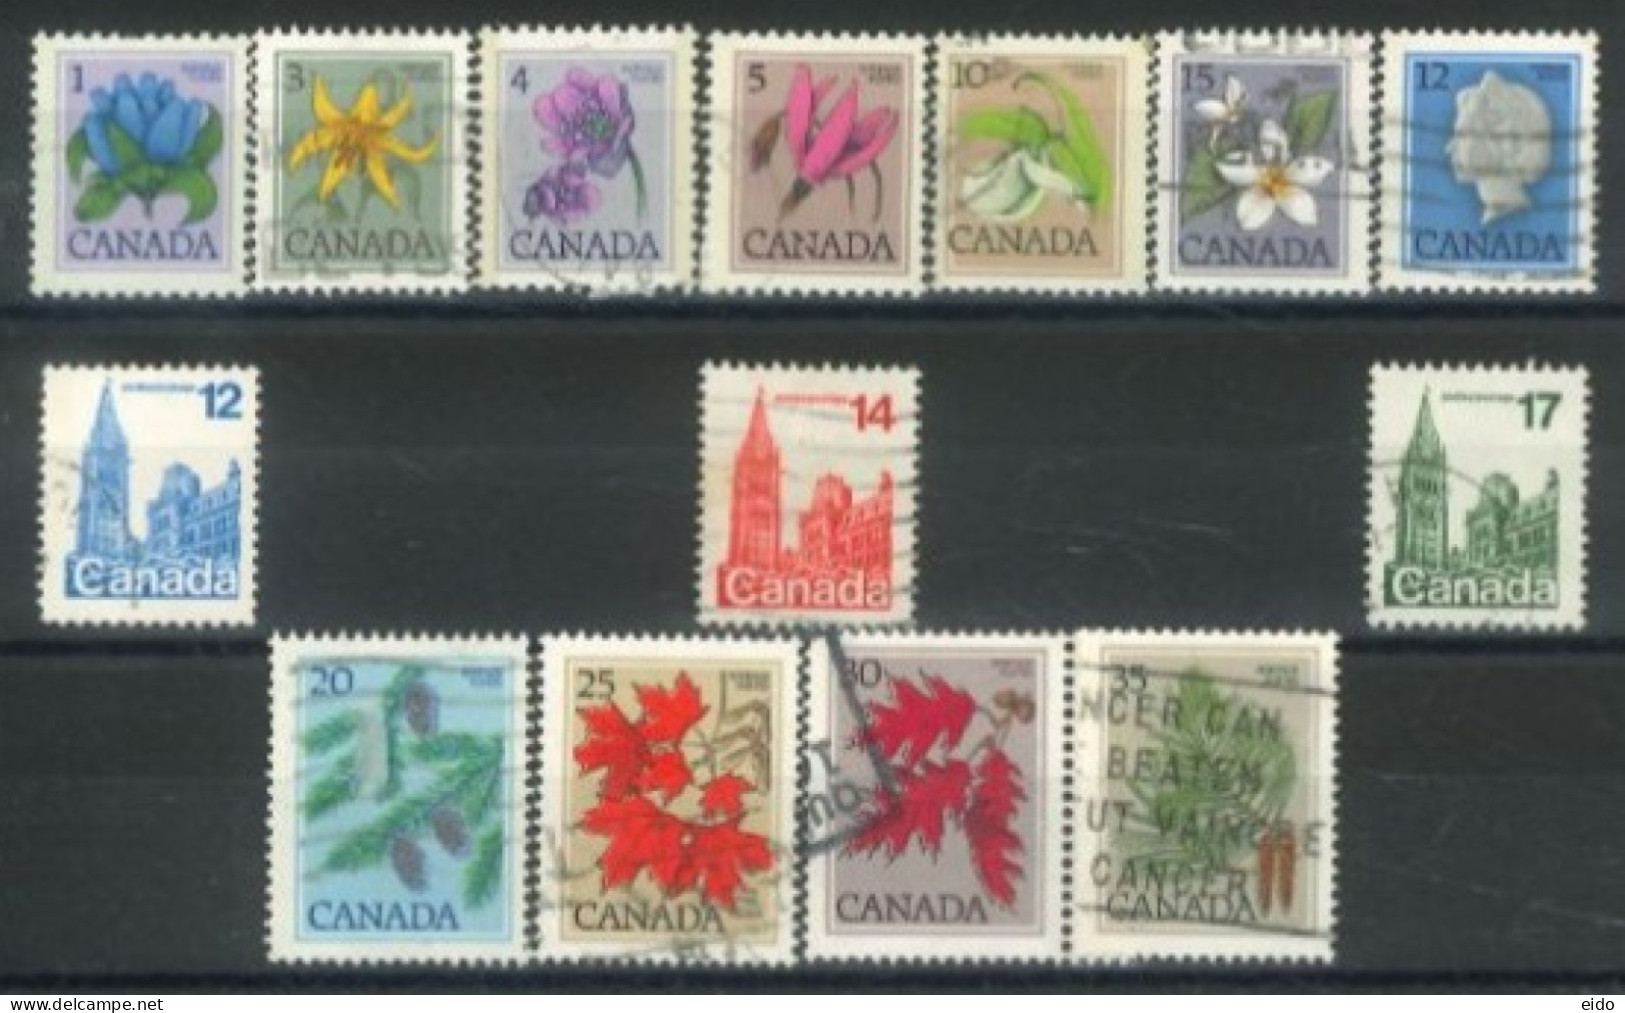 CANADA - 1977, QUEEN ELIZABETH II, HOUSE OF PARLIAMENT, FLOWERS & LEAVES STAMPS SET OF 14, USED. - Gebruikt